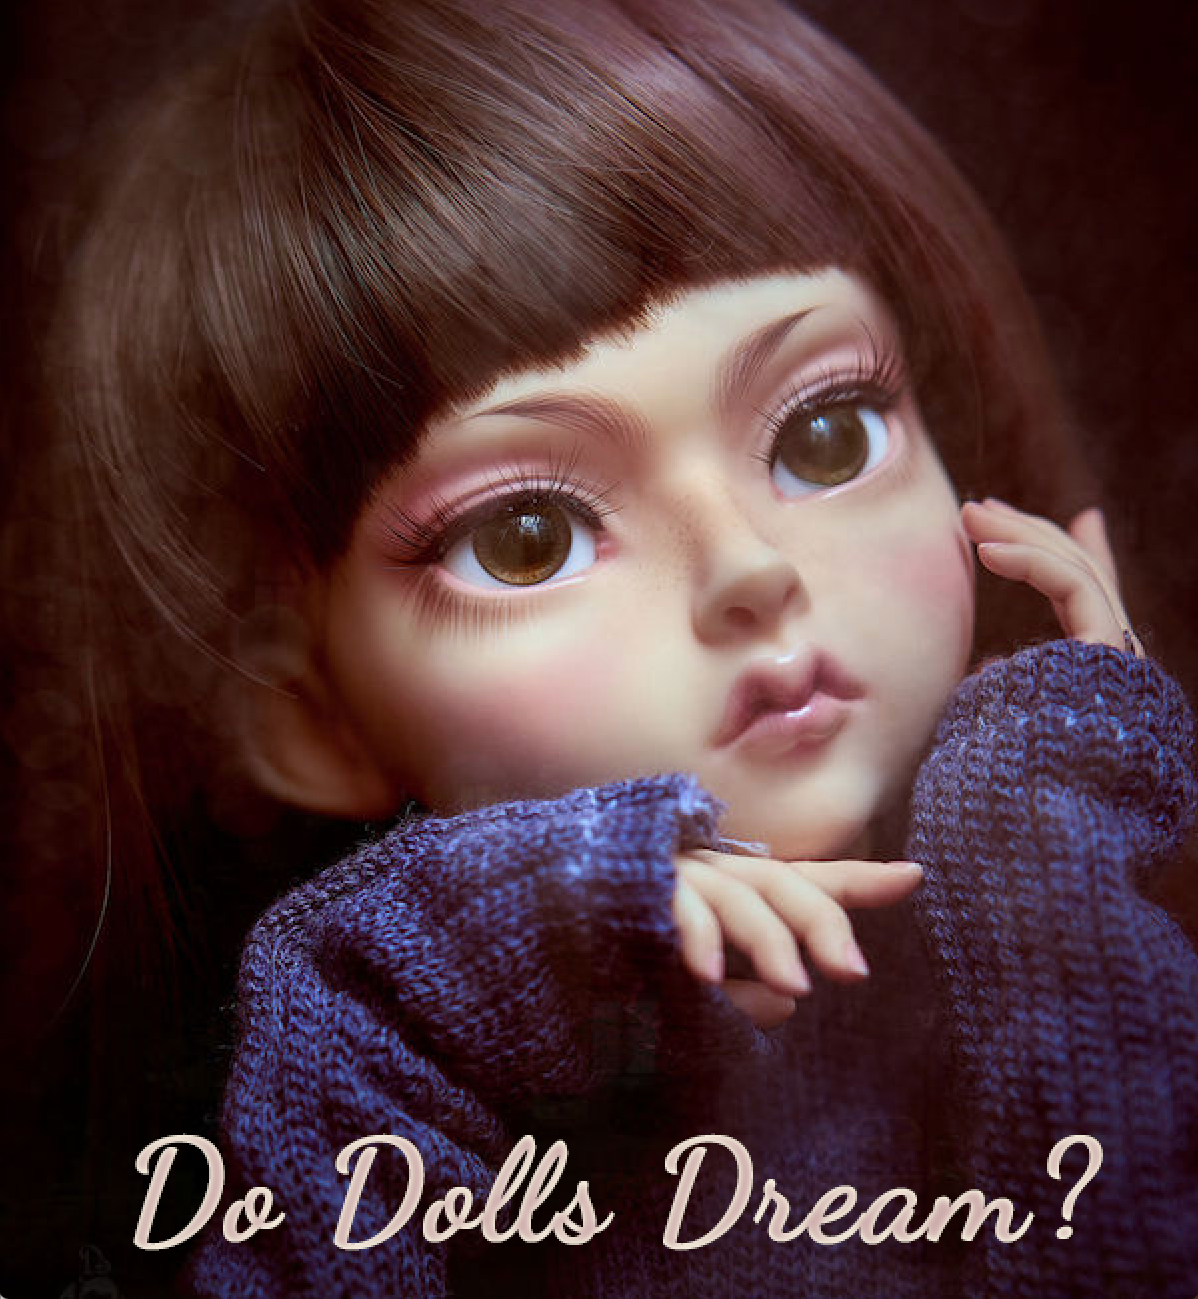 dream of dolls bjd